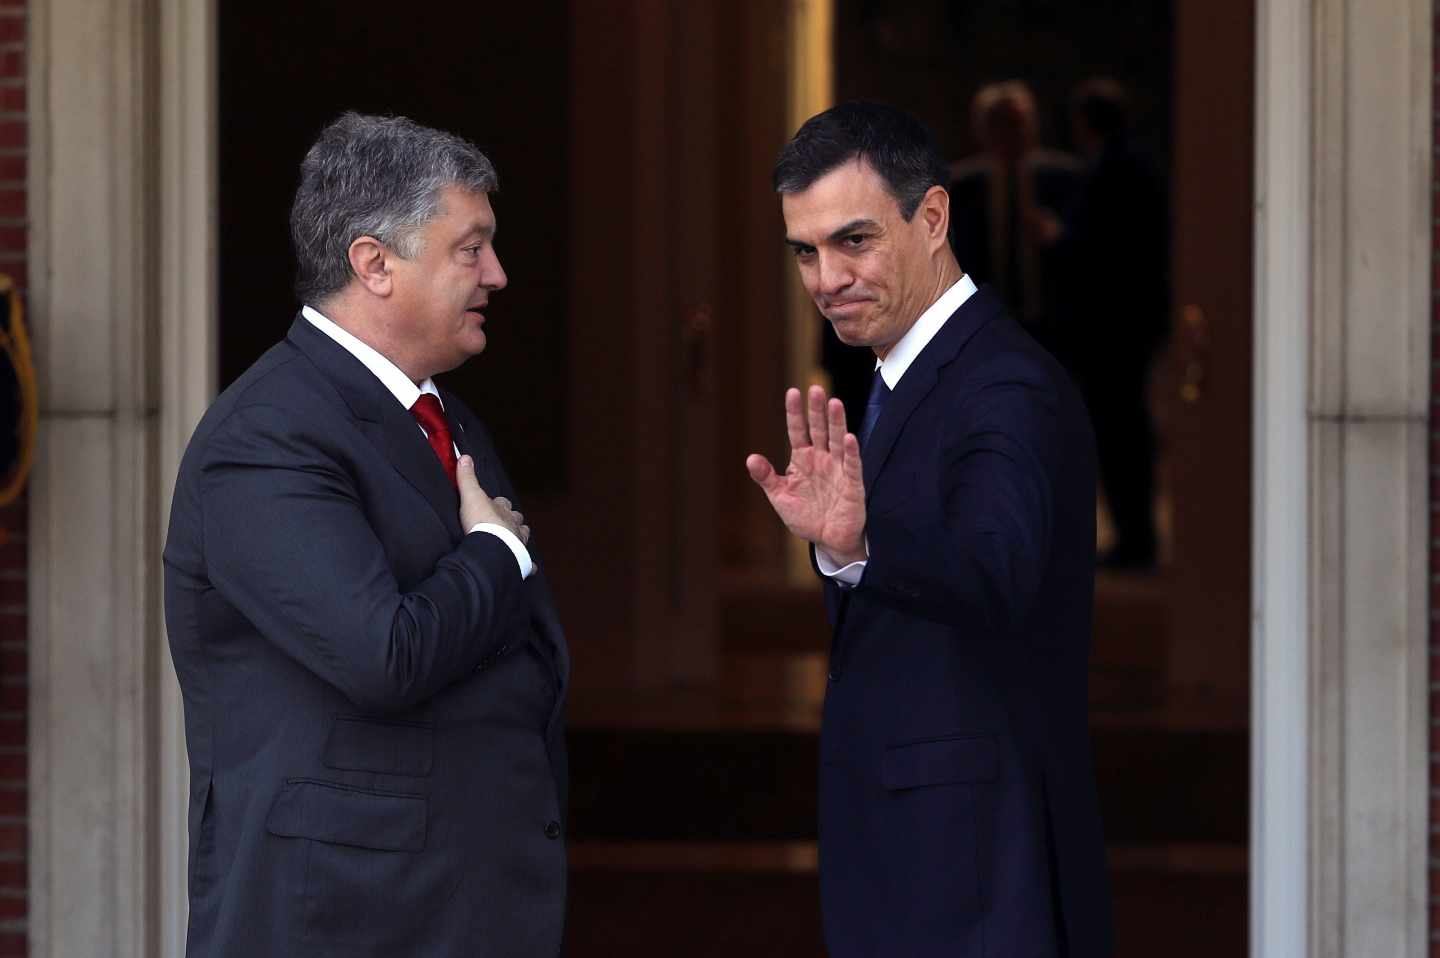 Pedro Sánchez recibe al mandatario ucraniano Petro Poroshenko en su primer acto como presidente del Gobierno.